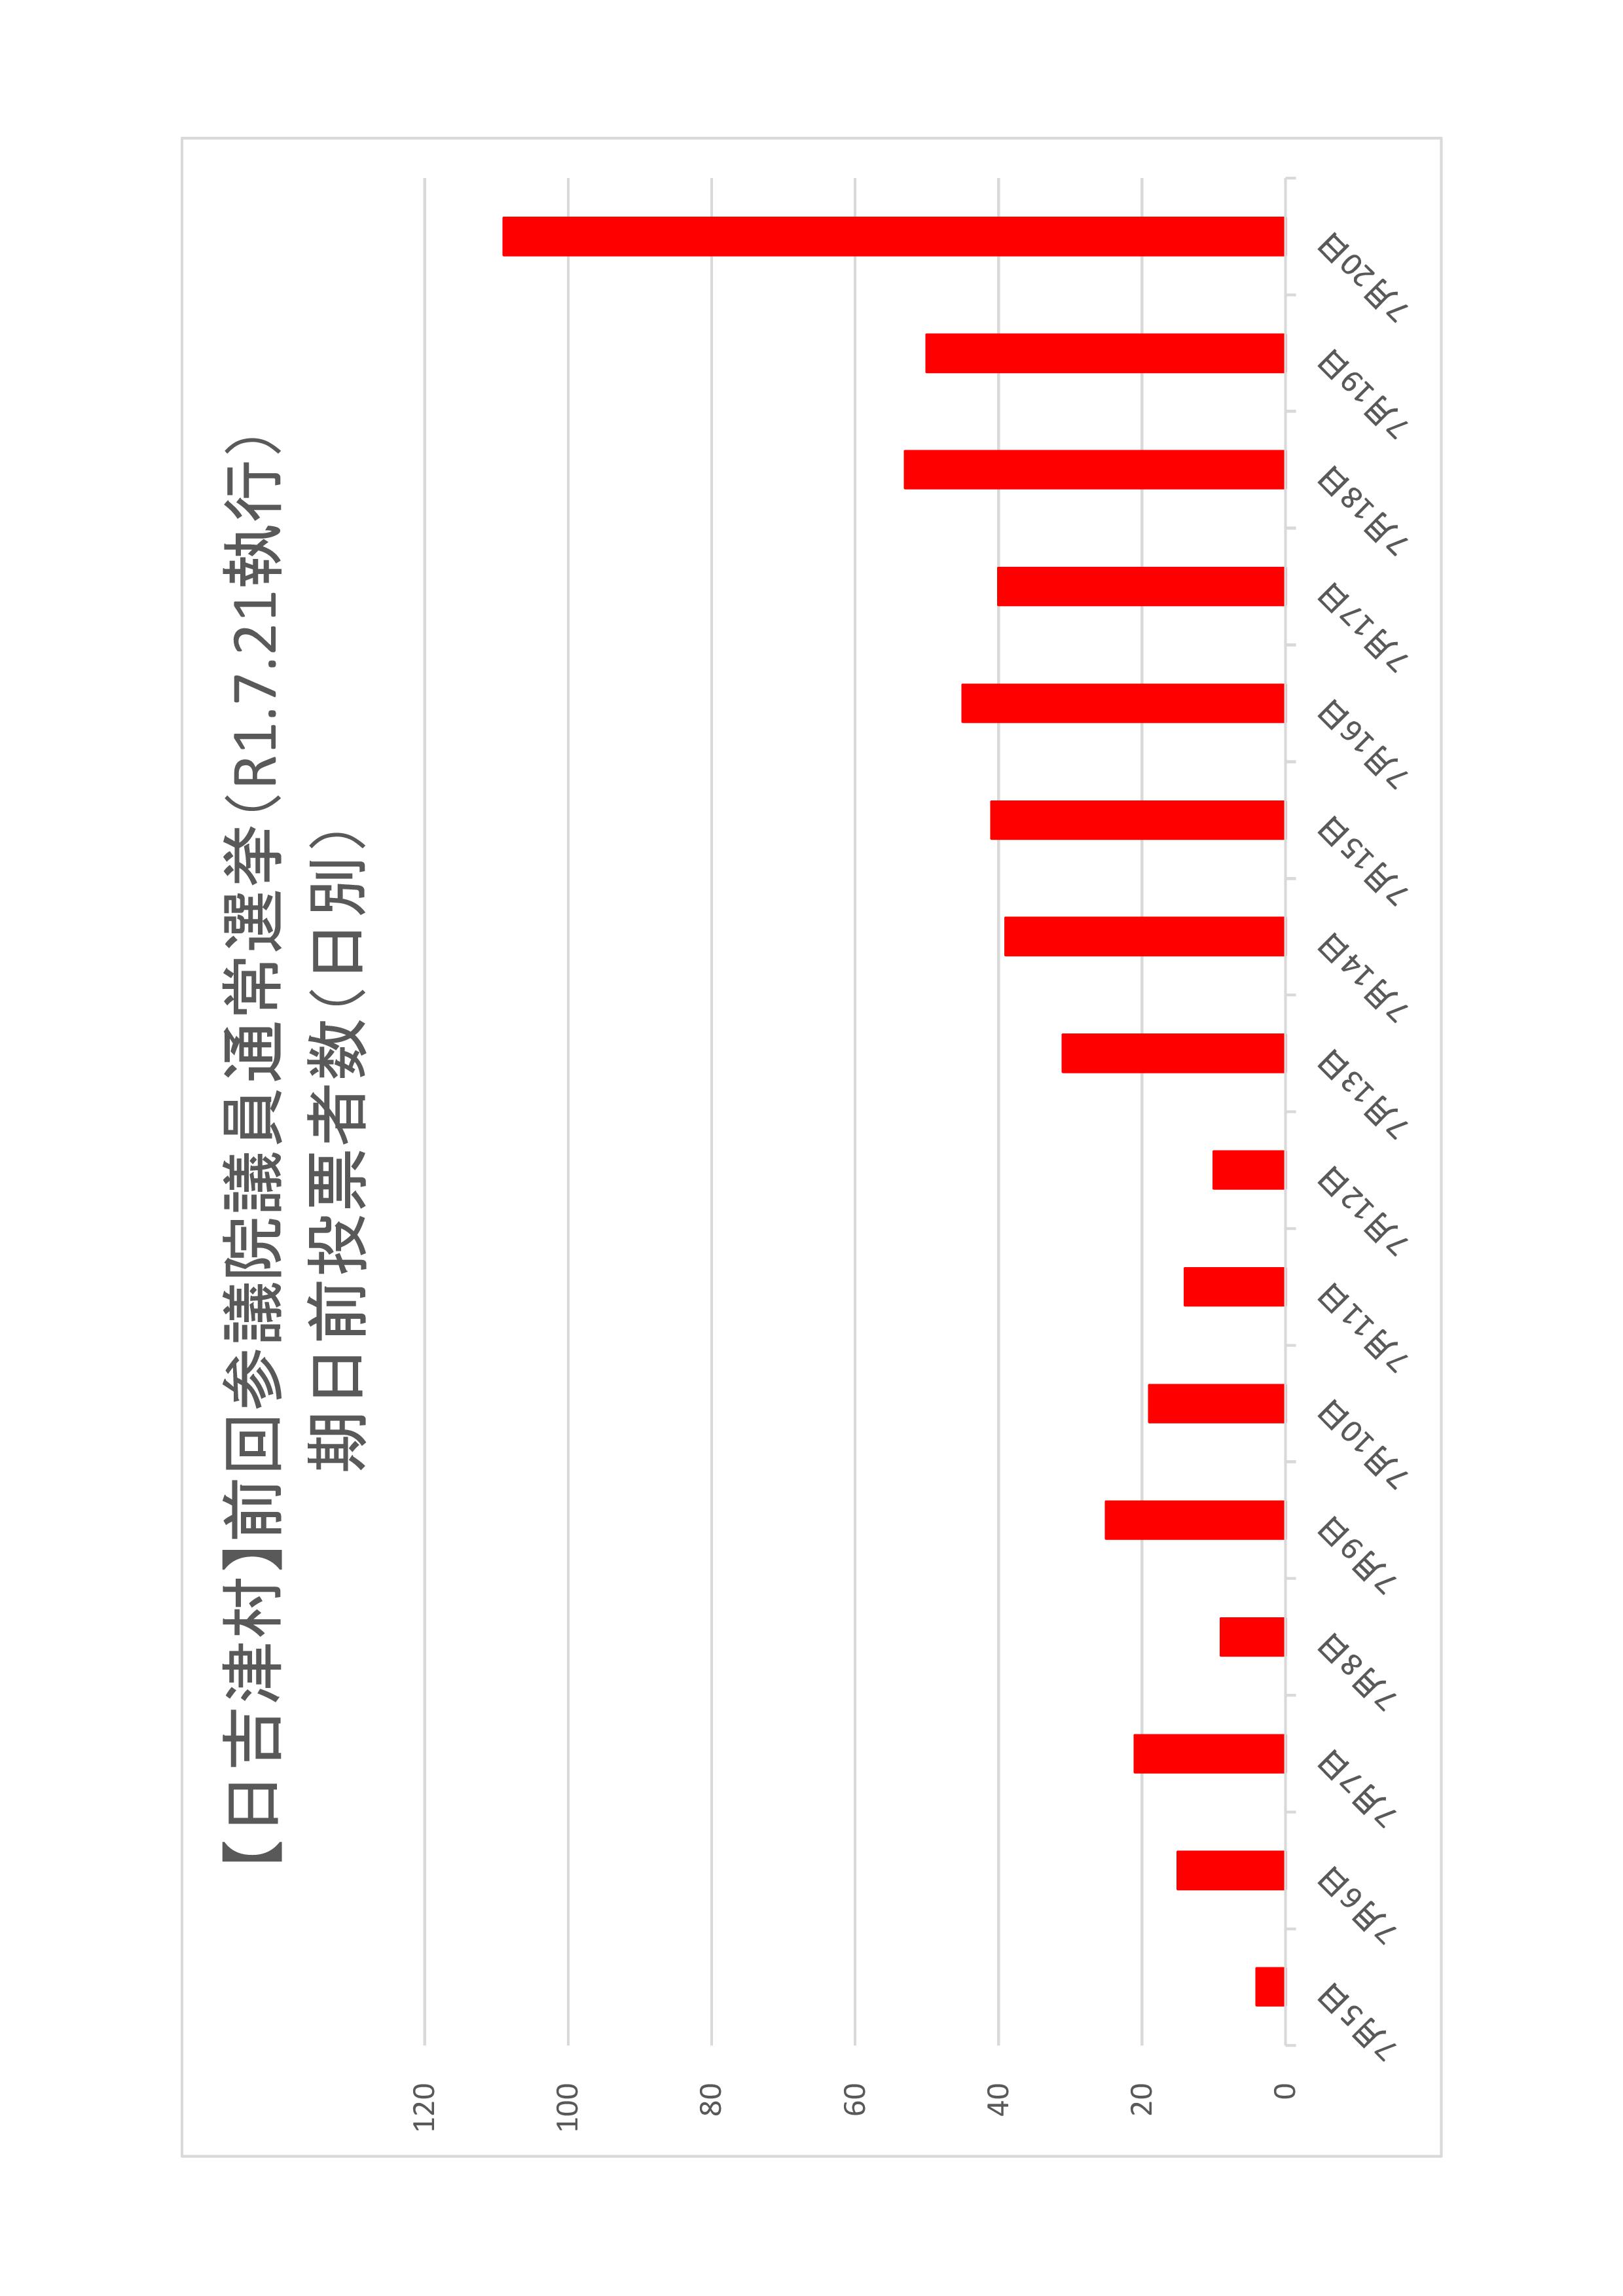 日吉津村の日別期日前投票者数のグラフ